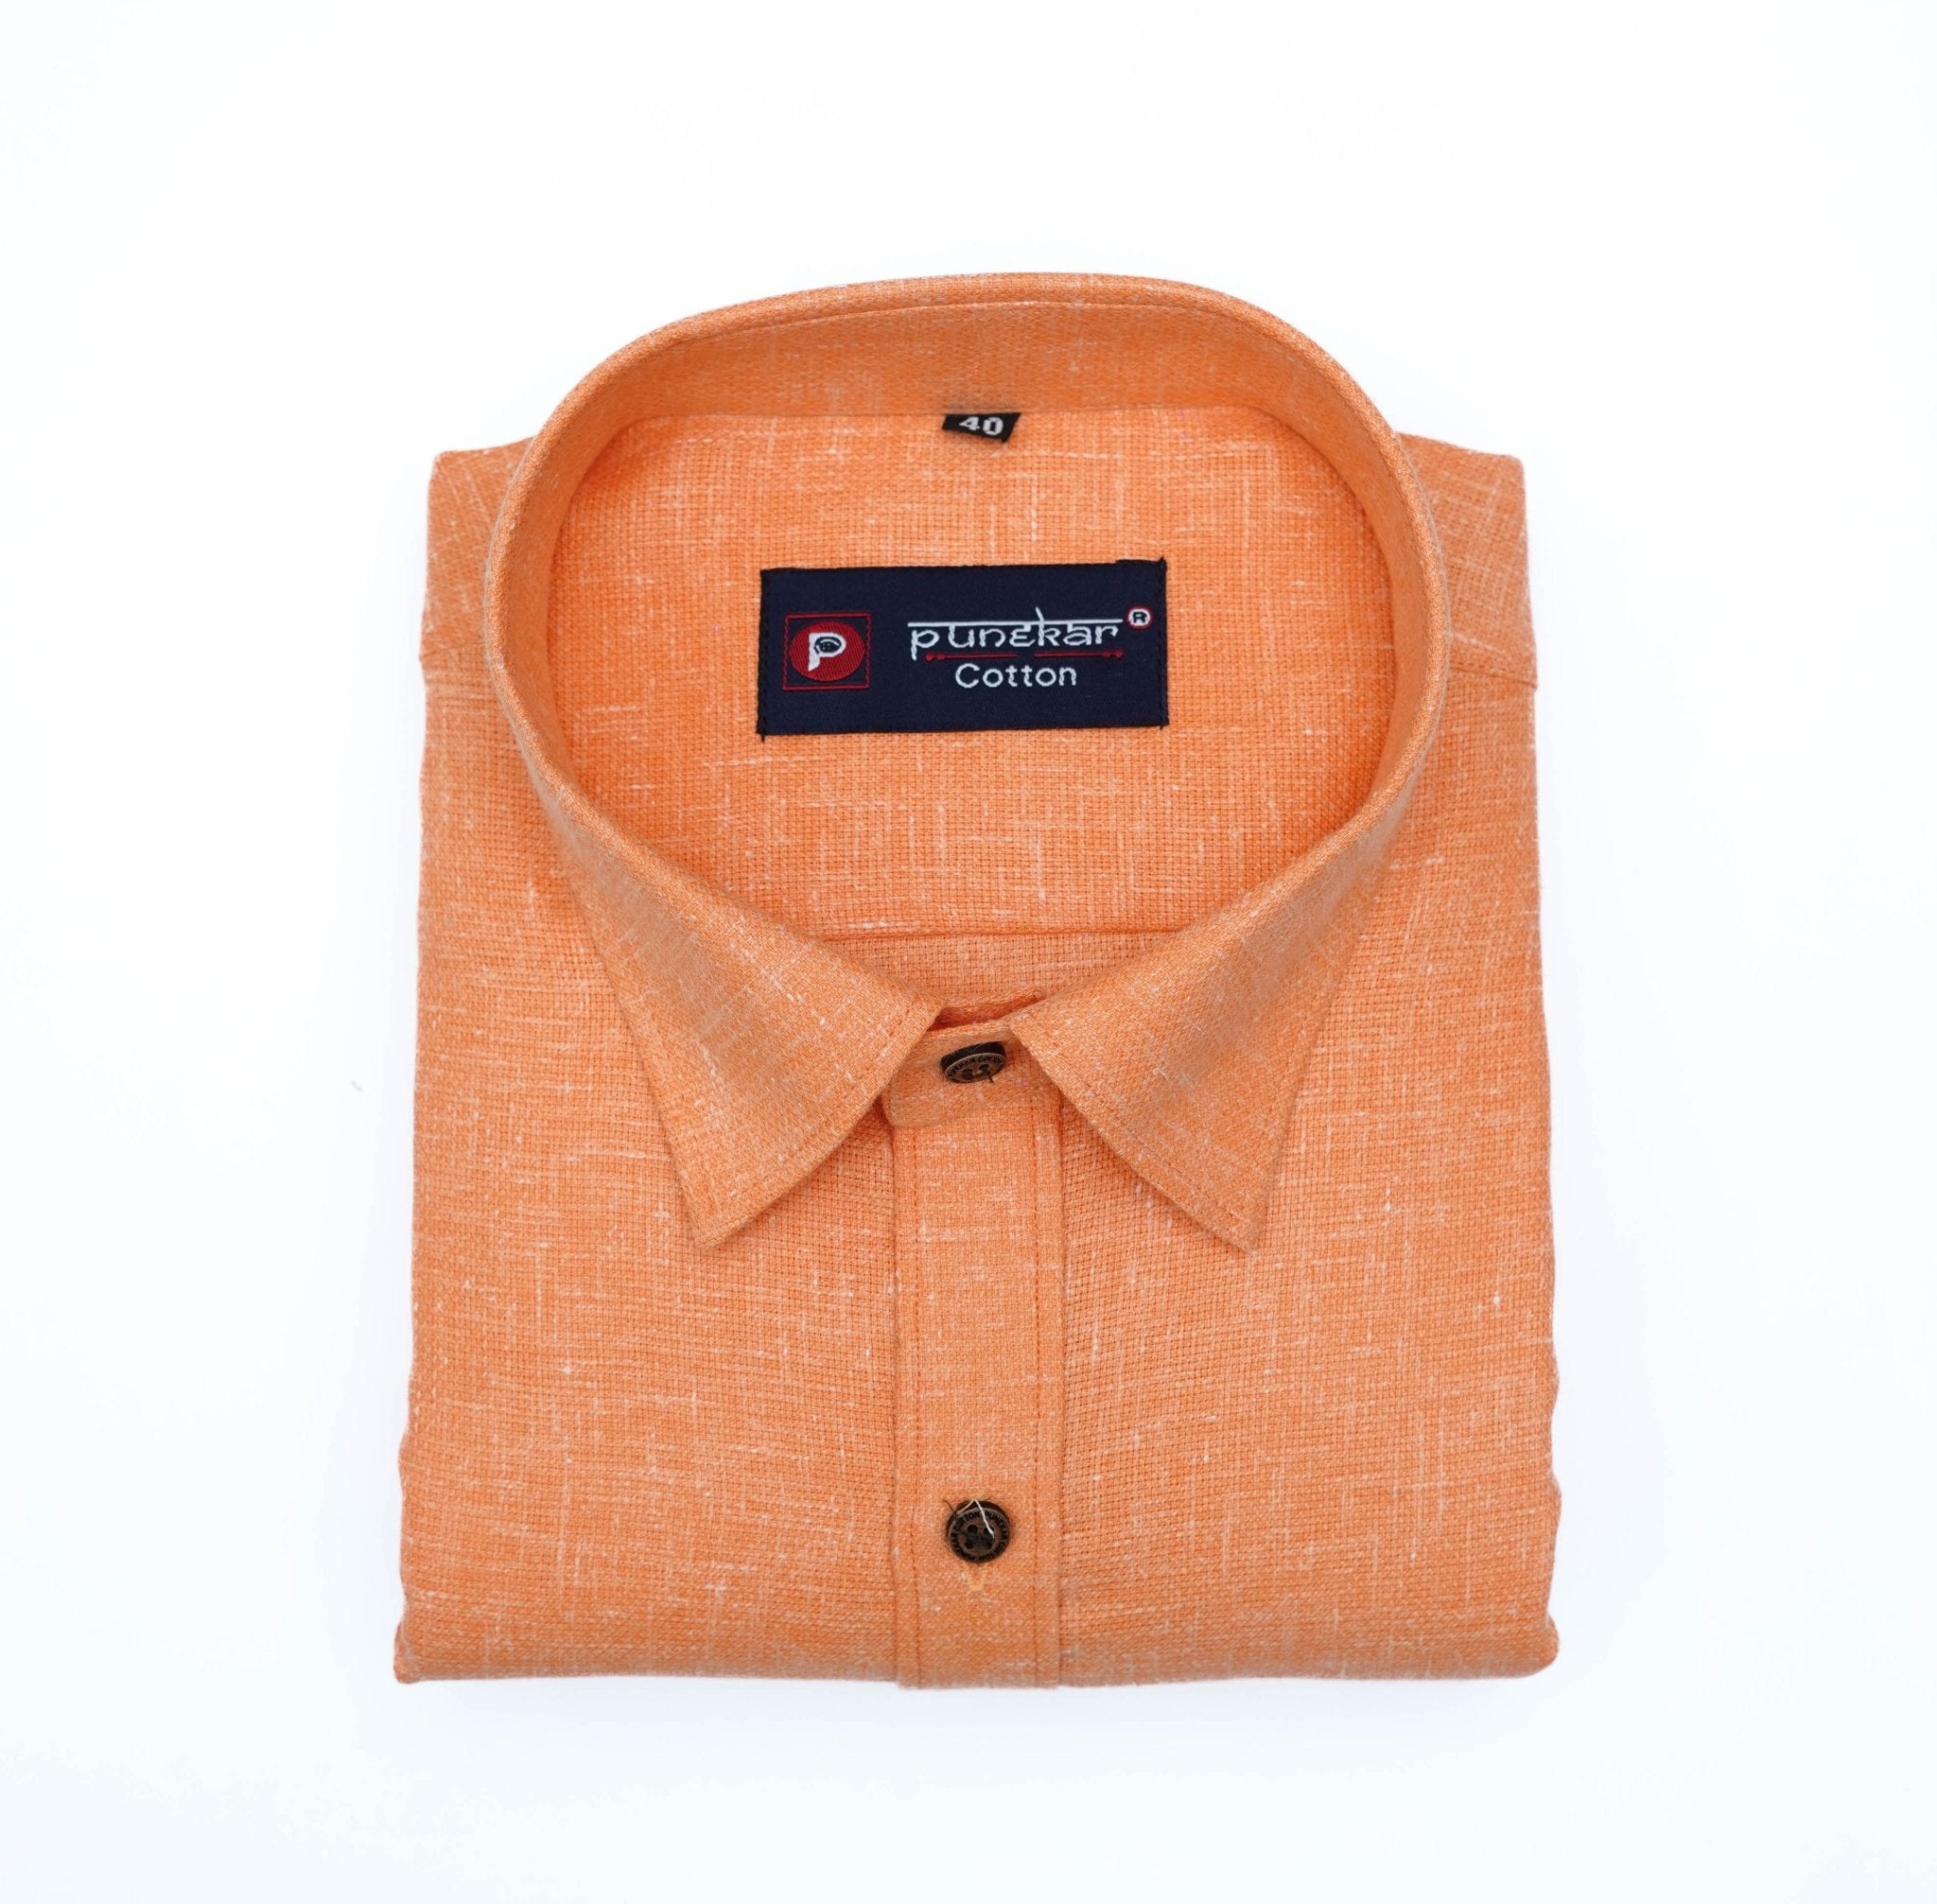 Punekar Cotton Orange Color Cotton Linen Formal Shirt for Men's.